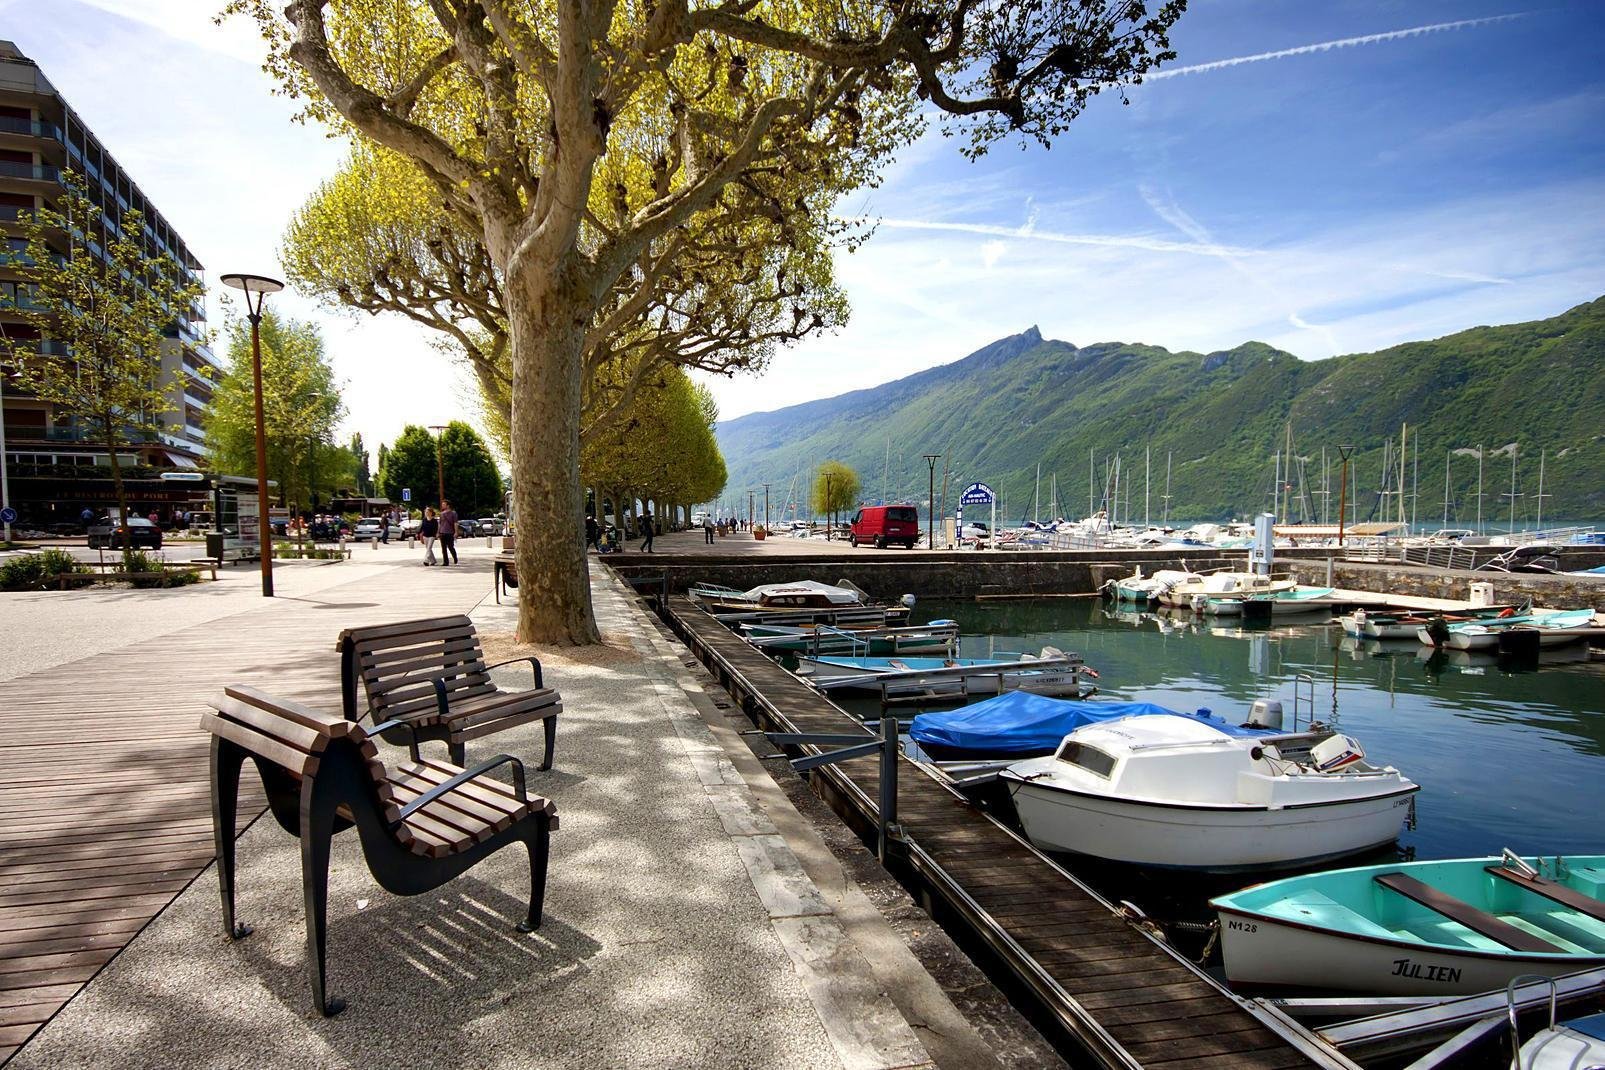 Aix-les-Bains liegt am Ufers des Lac du Bourget, dem größten Natursee Frankreichs, und war um die Jahrhundertwende einer der bekanntesten Badekurorte der gehobenen europäischen Gesellschaft. Wie ihr Name schon andeutet verdankt die Stadt ihren Bekanntheitsgrad den Thermalquellen. Noch heute gibt es drei Thermen in Aix-les-Bains: die staatlichen Thermen, die 